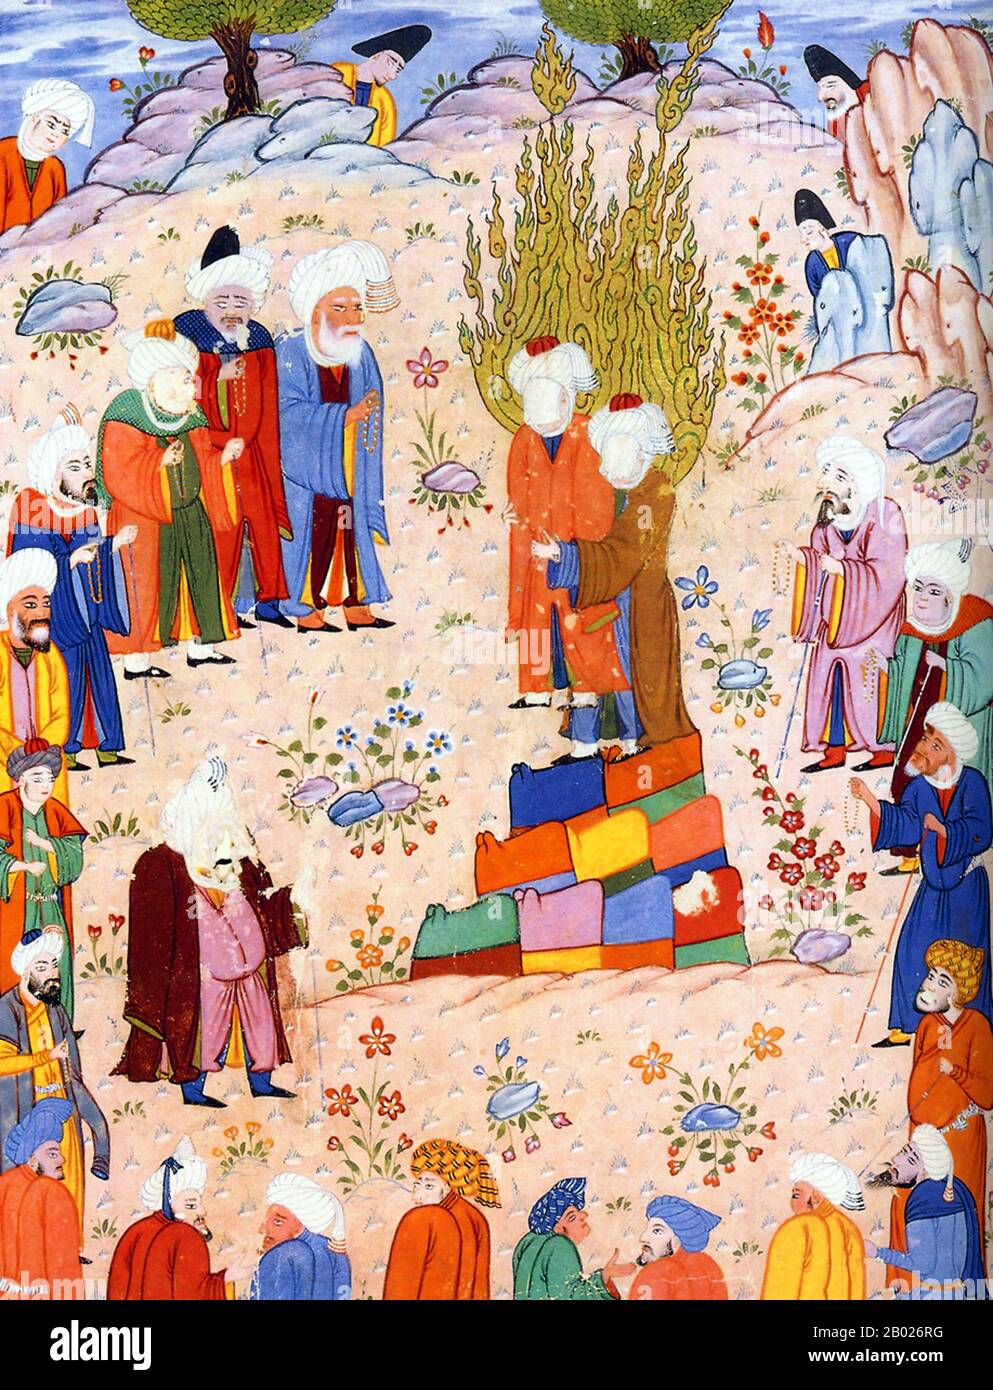 Según la tradición chiíta, Muhammad designó formalmente a su yerno, Ali ibn Abi Talib (el califa Ali) como su sucesor en el oasis de Gadir Khum, situado a medio camino entre las ciudades santas de la Meca / Makkah y Medina, en el Hijaz árabe. La tradición sunita disputa este evento alguna vez tuvo lugar. Las representaciones del Profeta Muhammad son controvertidas, y generalmente prohibidas en el Islam sunita (especialmente Hanafiyya, Wahabi, Salafiyya). El Islam chiíta y algunas otras ramas del Islam sunita (Hanbali, Maliki, Shafi'i) son generalmente más tolerantes de tales imágenes representacionales, pero aún así t Foto de stock